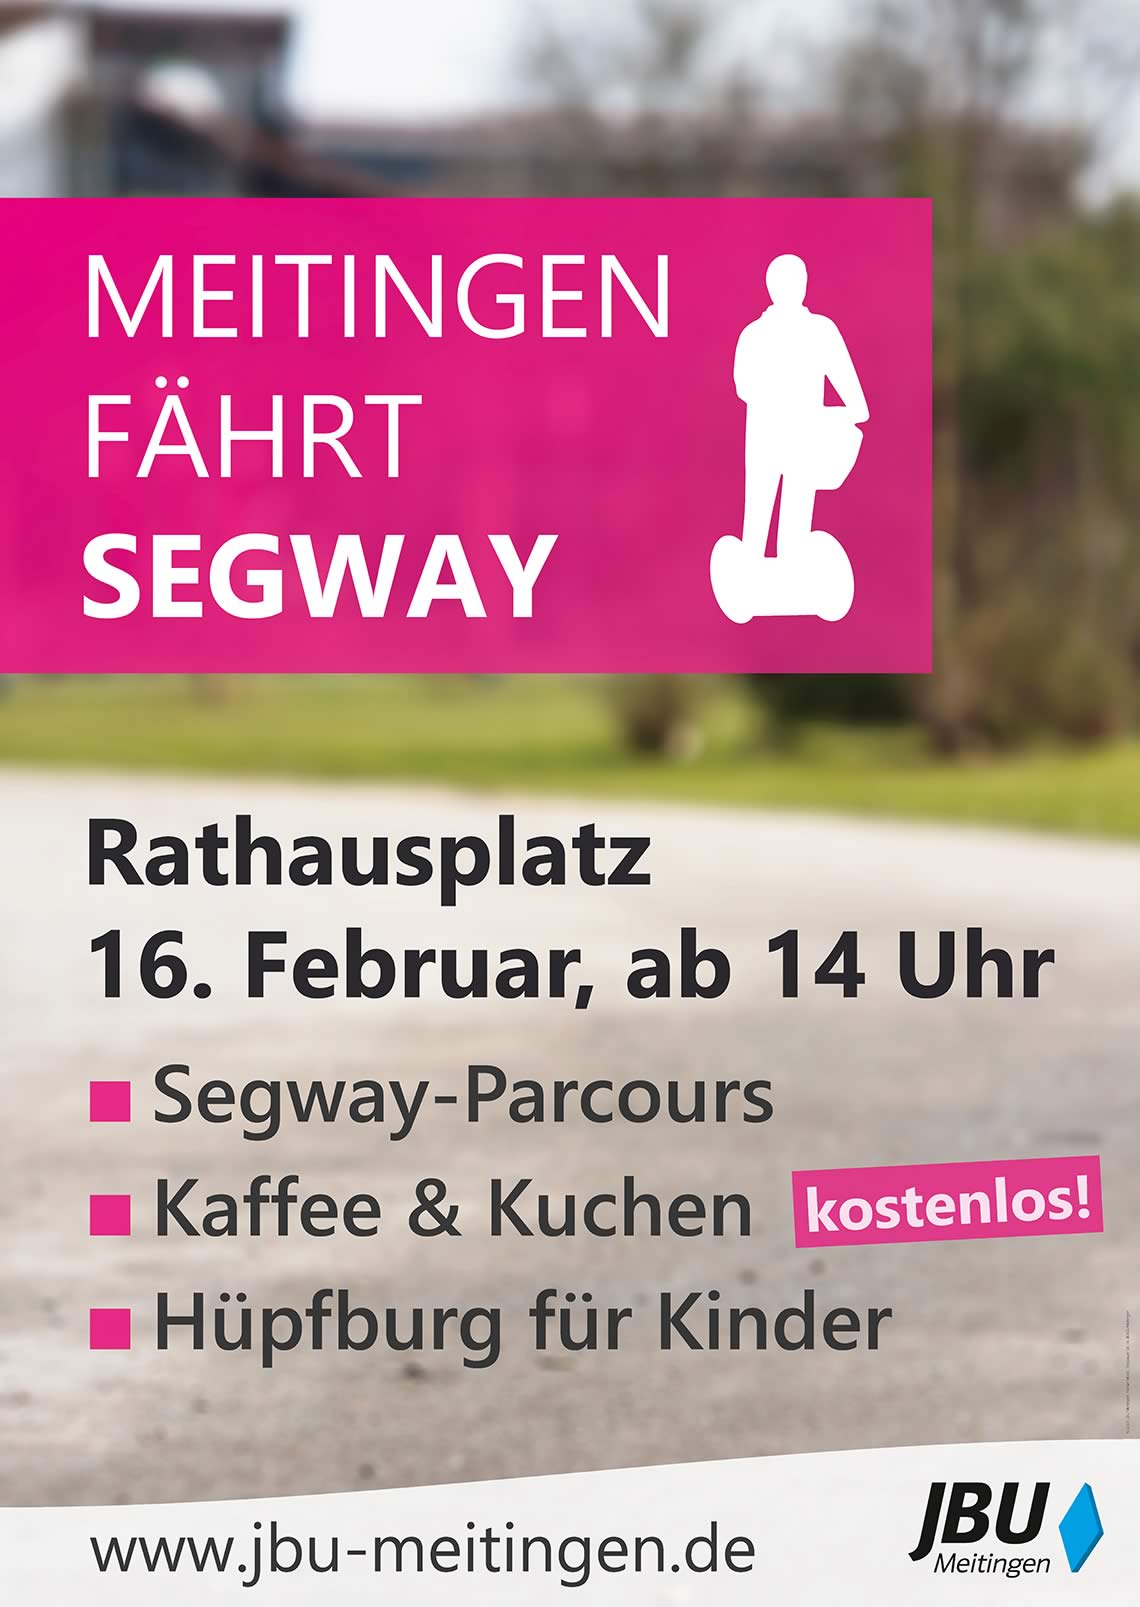 Plakat für Meitingen fährt Segway